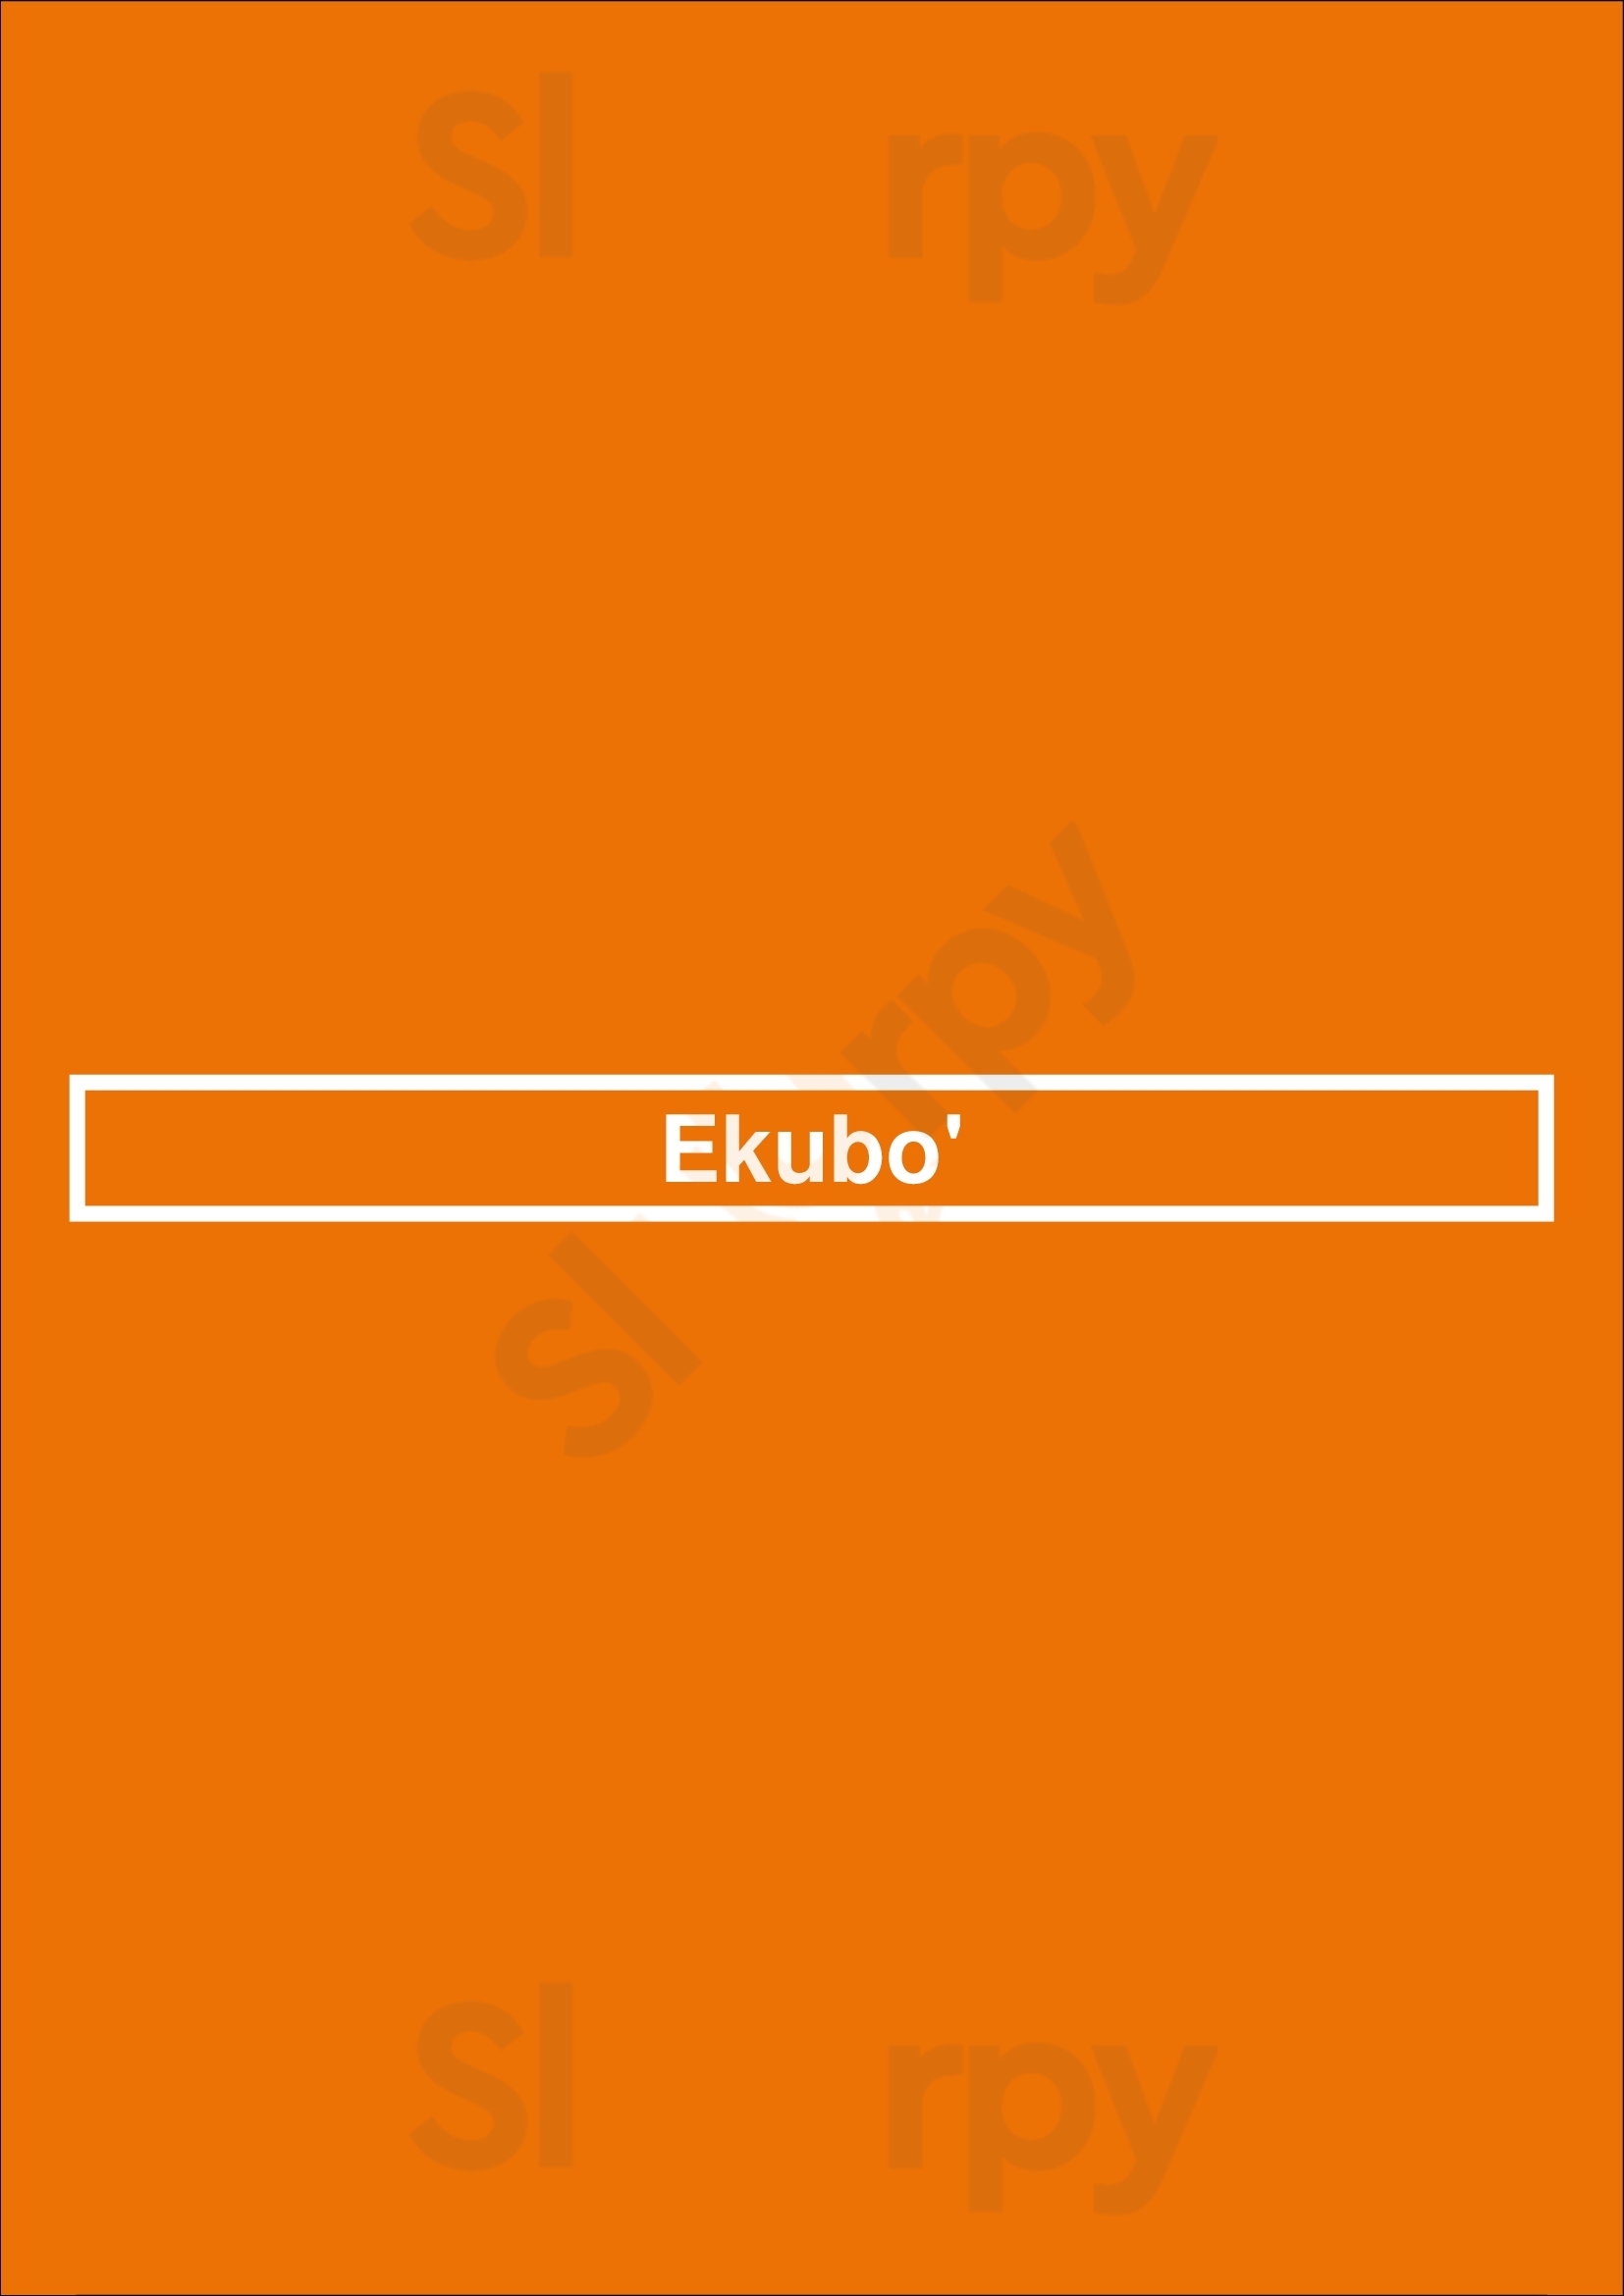 Ekubo' Barcelona Menu - 1